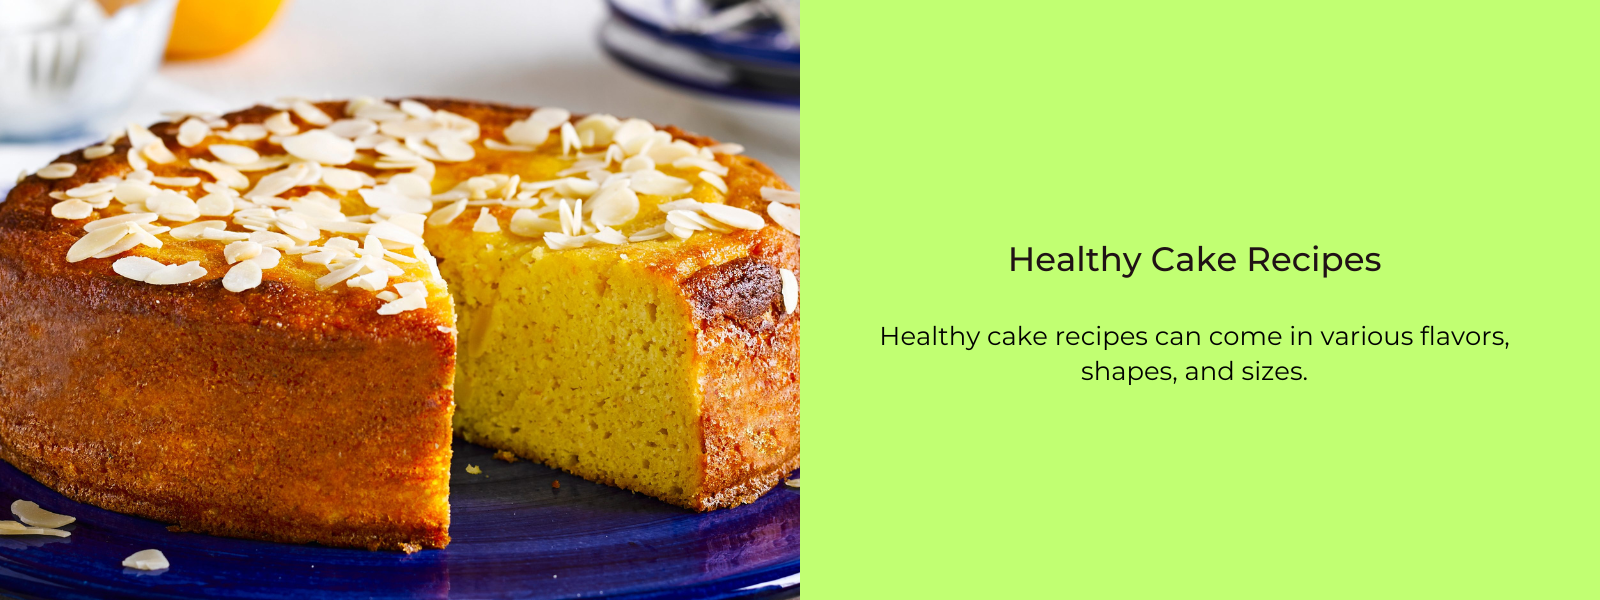 Healthy Cake Recipes - PotsandPans India